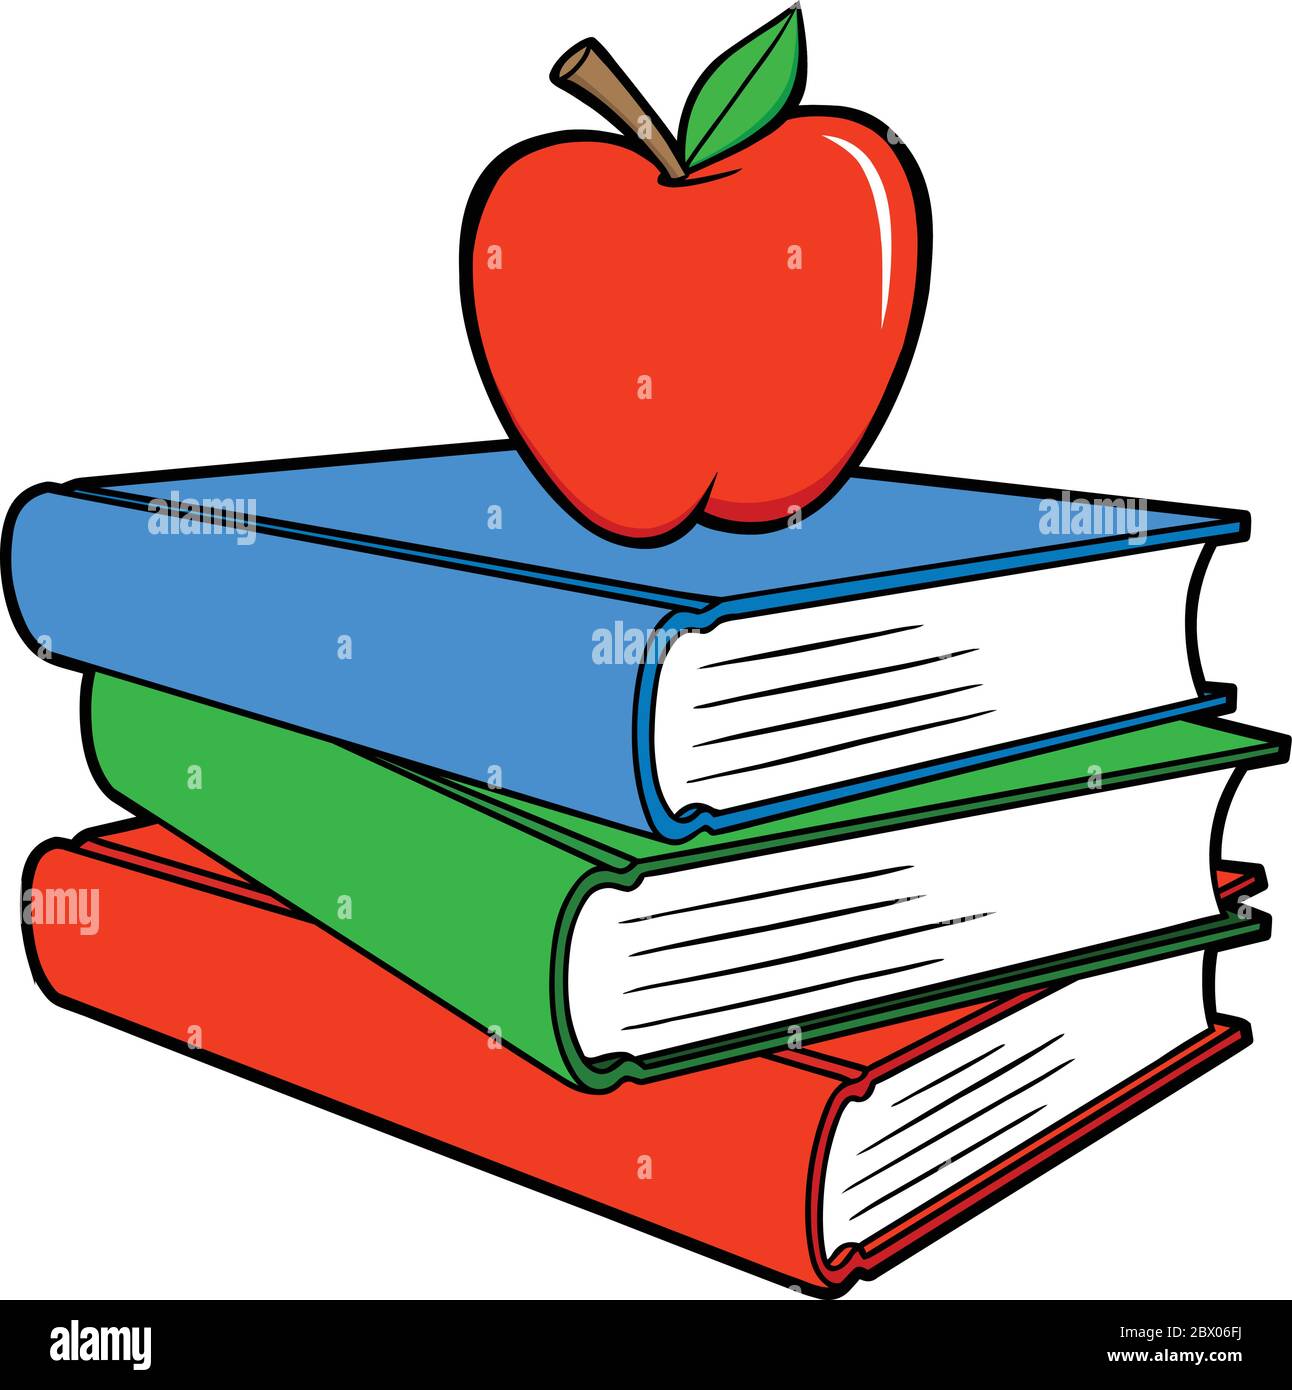 Libri scolastici con una Apple - un'illustrazione cartoon di alcuni libri  scolastici con una Apple Immagine e Vettoriale - Alamy